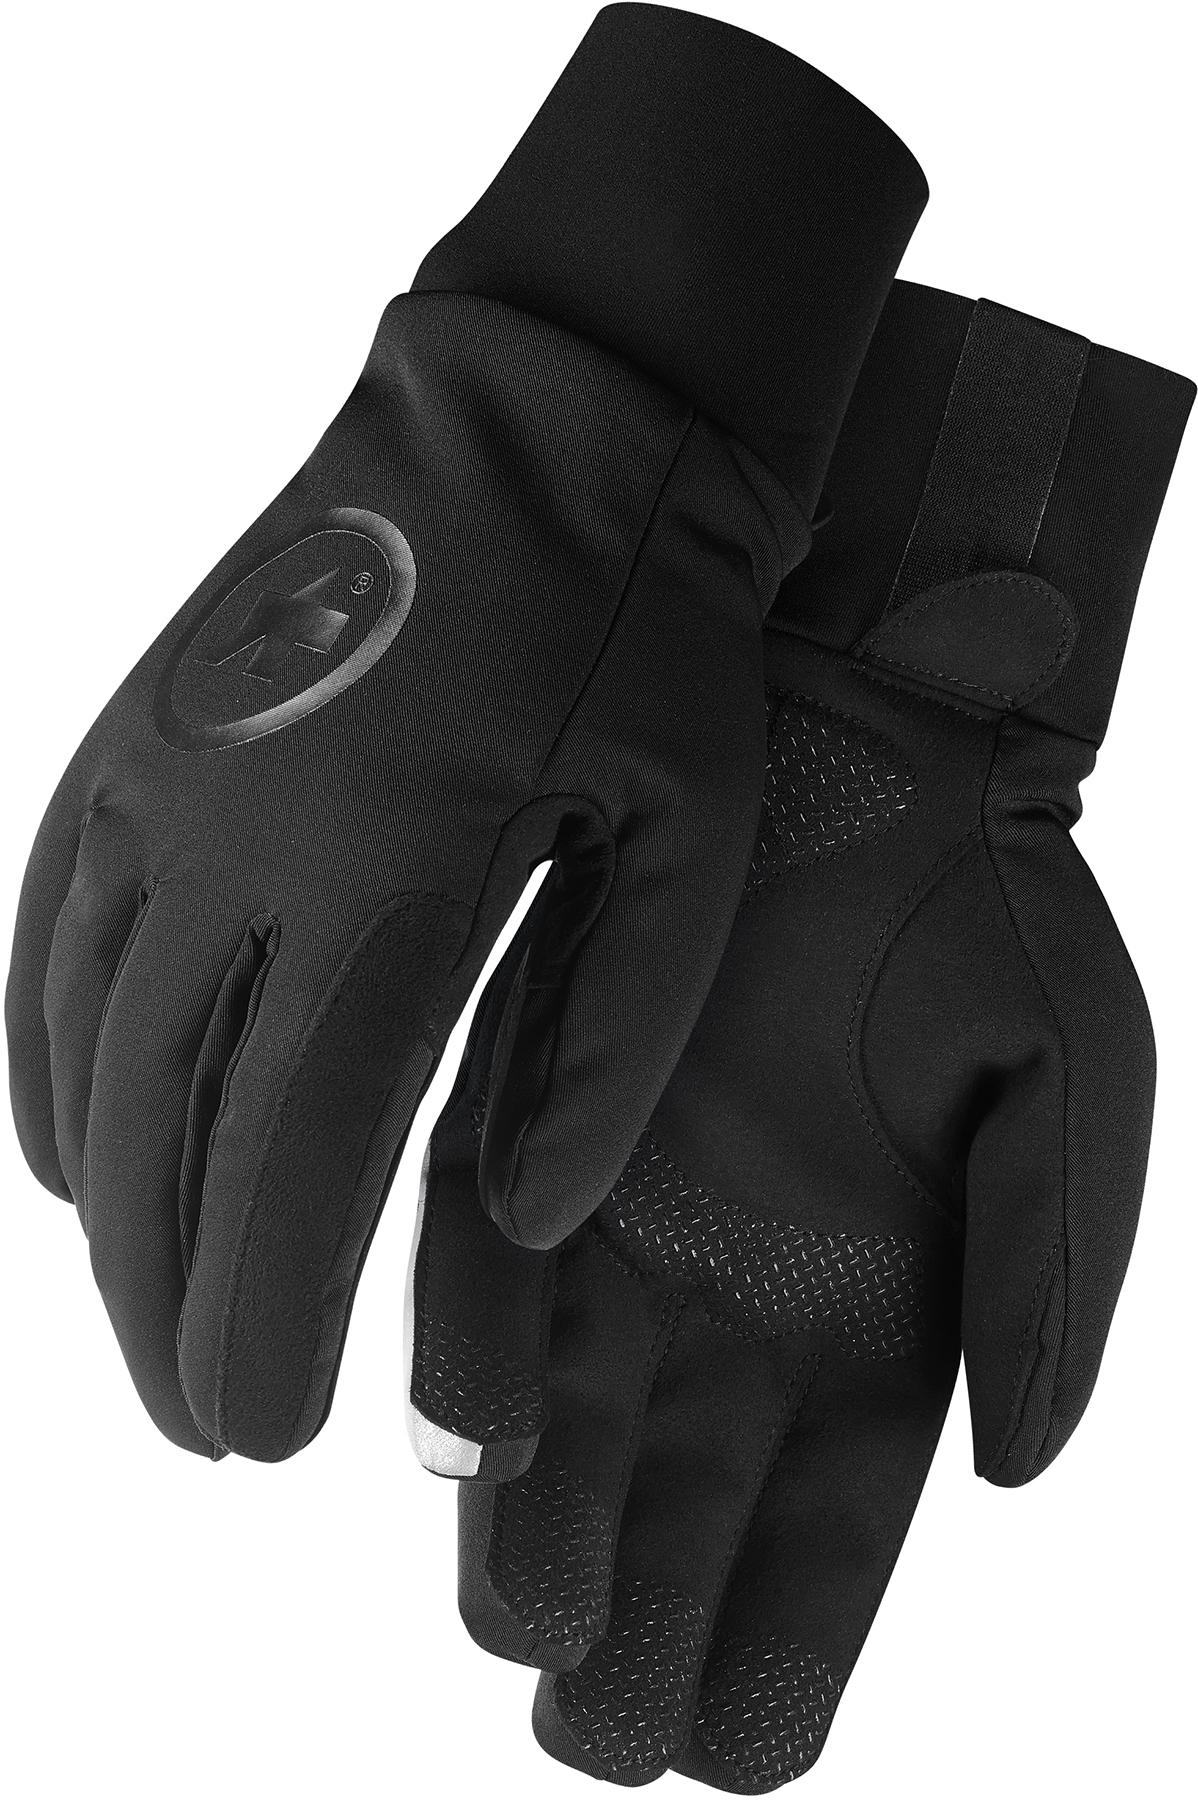 Assos Assosoires Ultraz Winter Gloves  Black Series